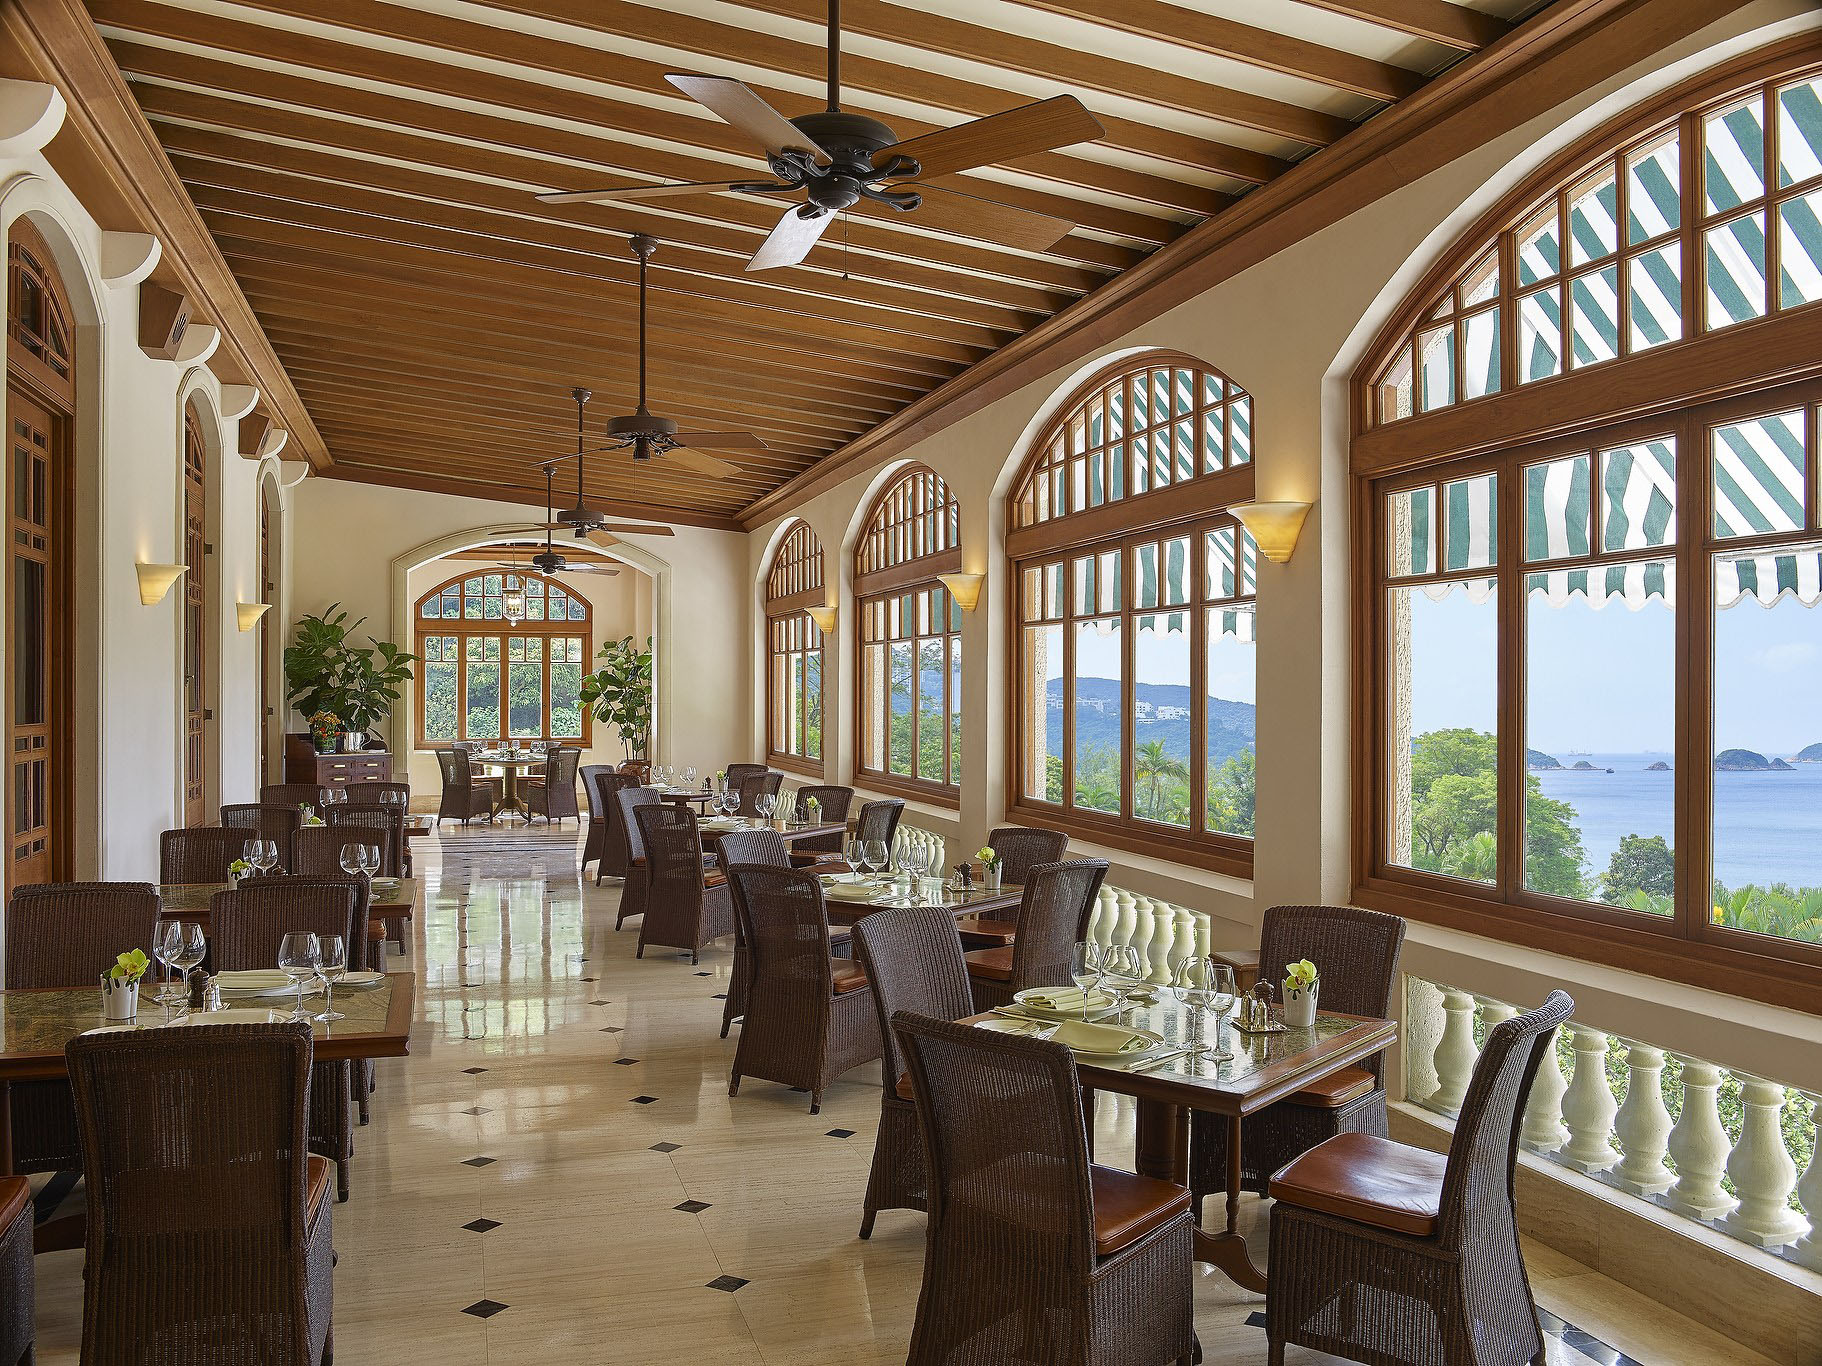 Elegant Romantic Restaurant Interior